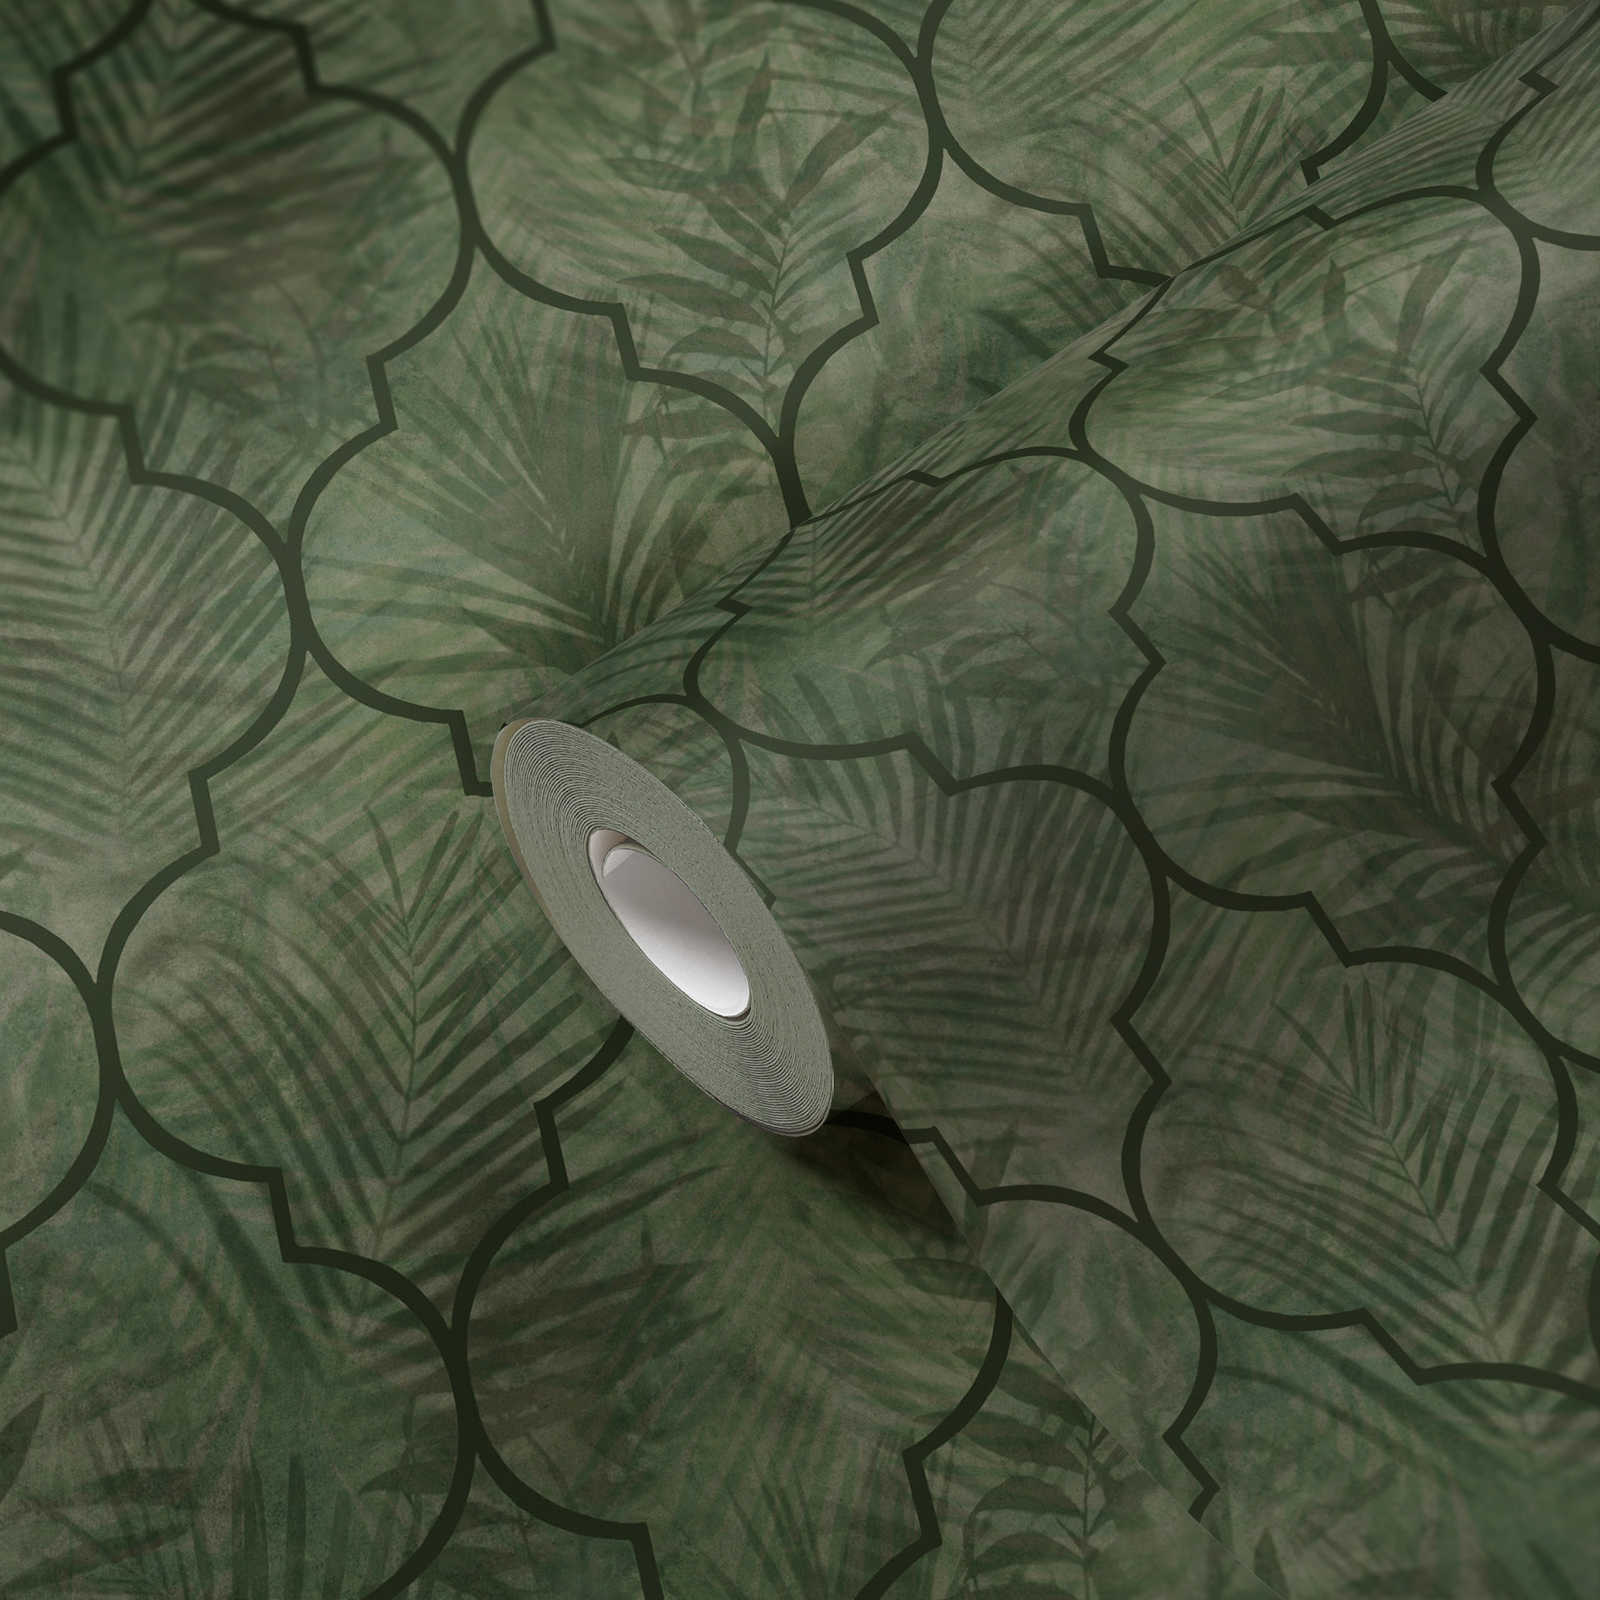             Vliestapete mit Blättermuster auf Fliesenoptik – Grün
        